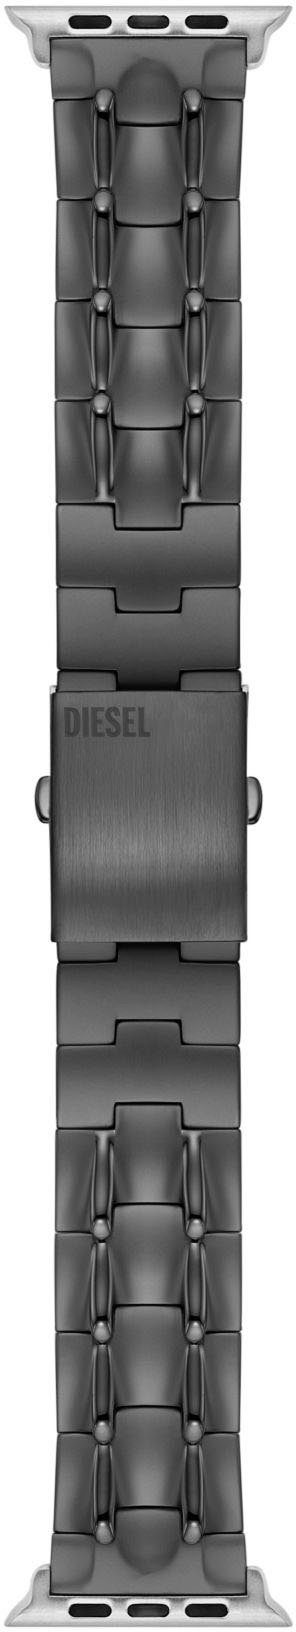 Diesel Smartwatch-Armband Apple Strap, DSS0015, 42 mm, 44 mm, 45 mm, ideal auch als Geschenk